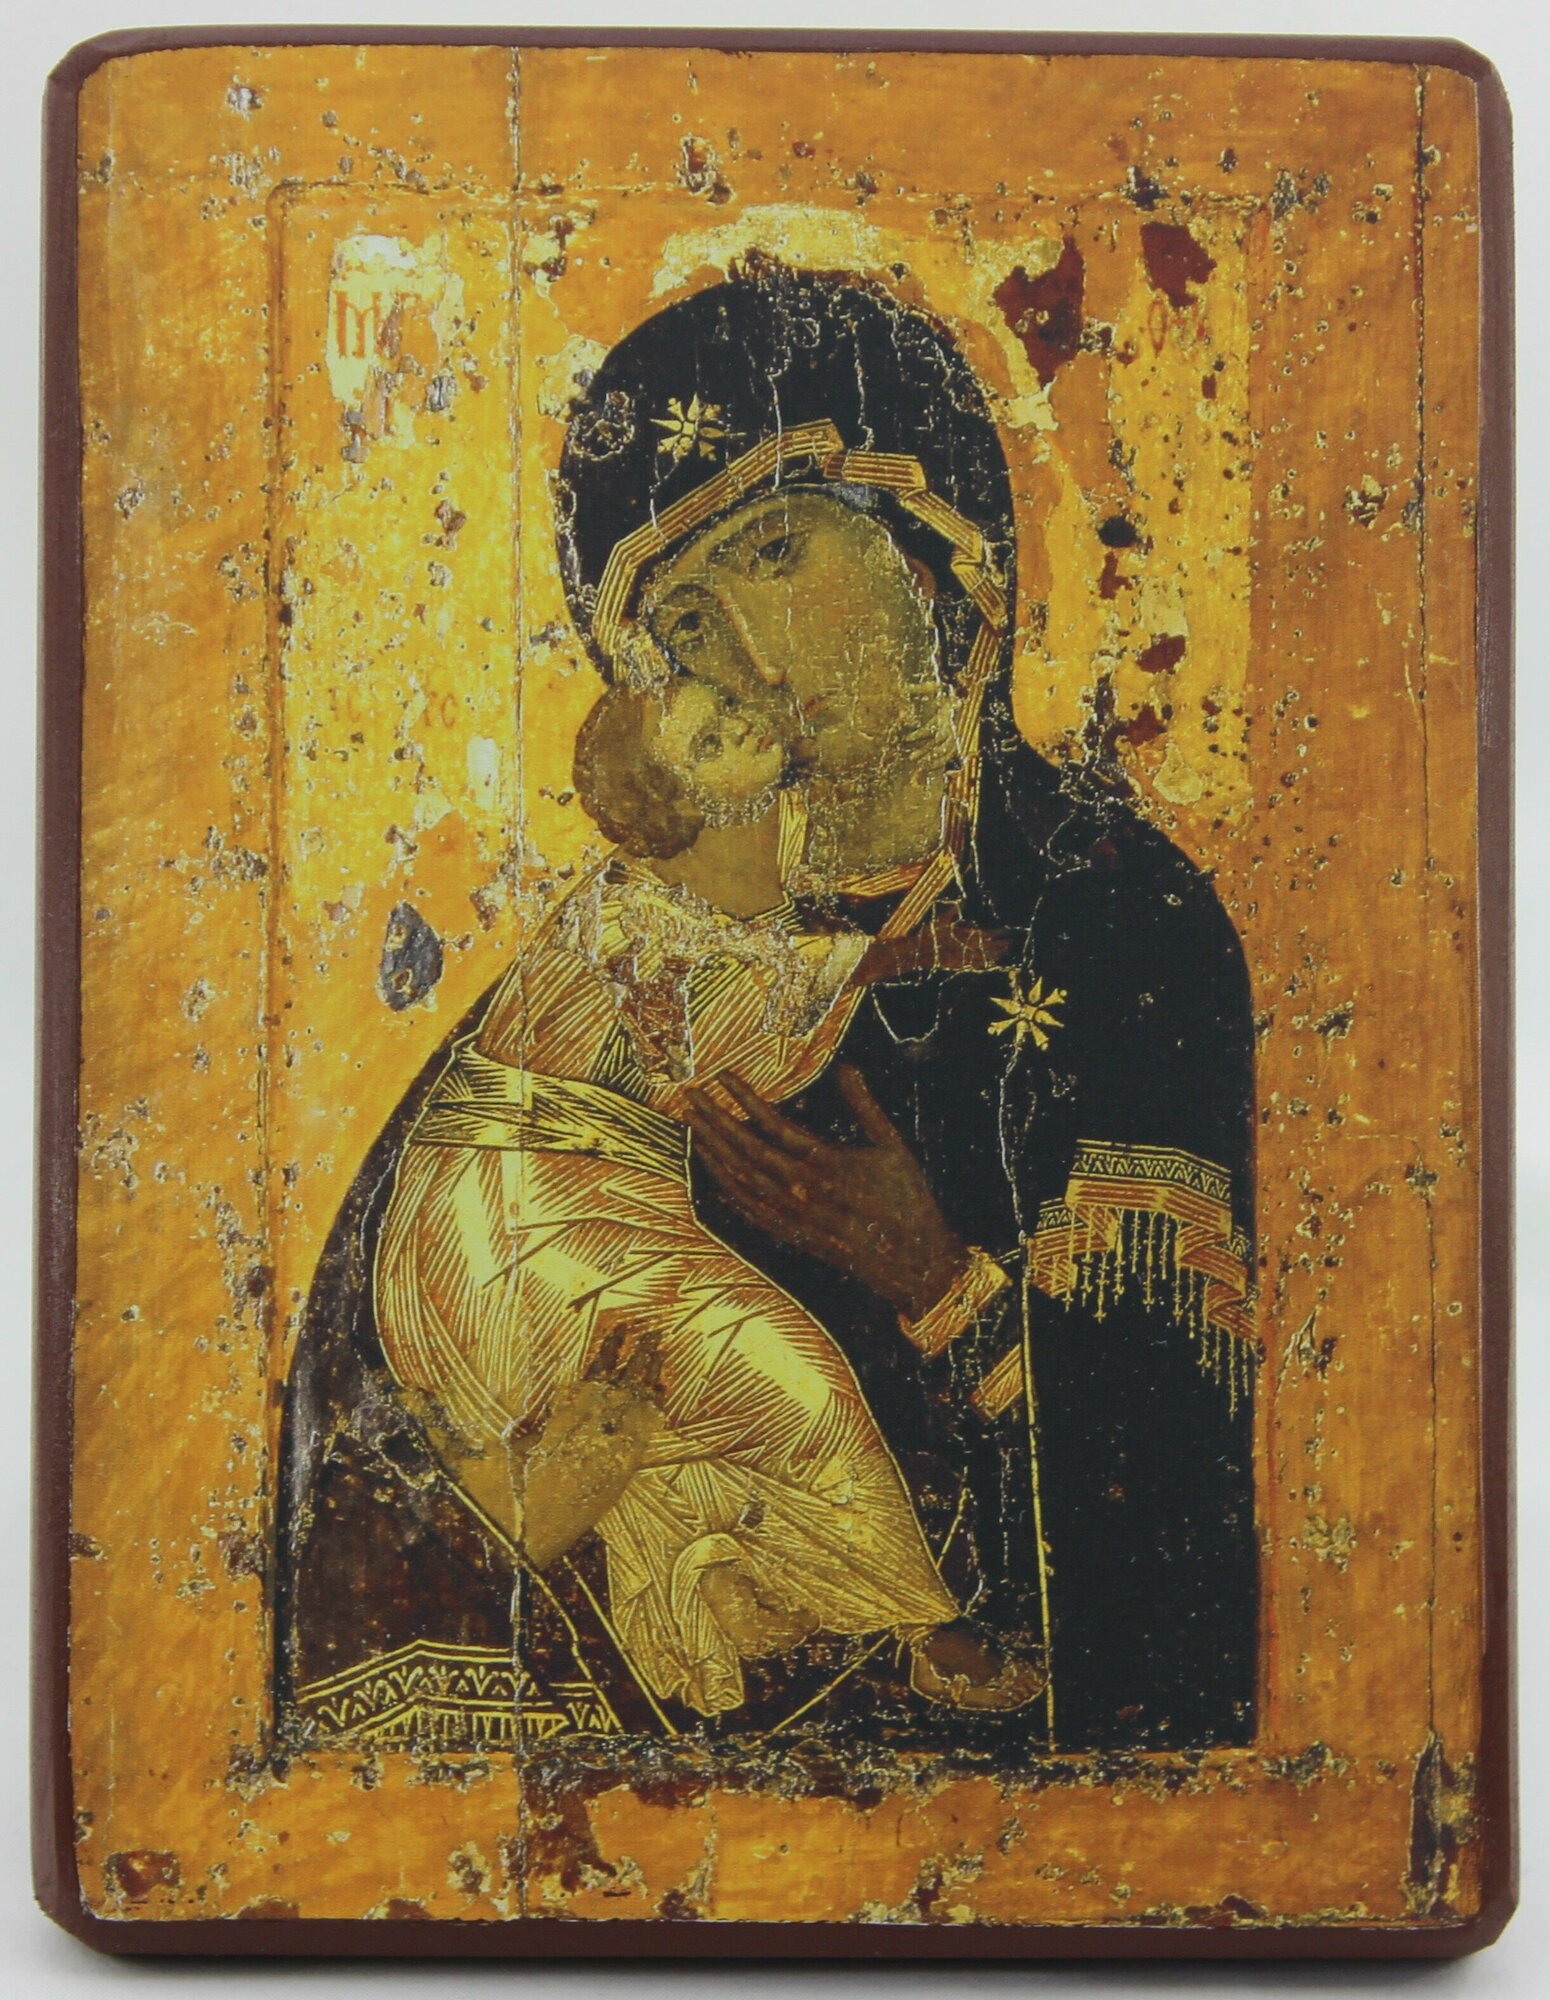 Православная Икона Божией Матери Владимирская, деревянная иконная доска, левкас, ручная работа (Art.1080М)